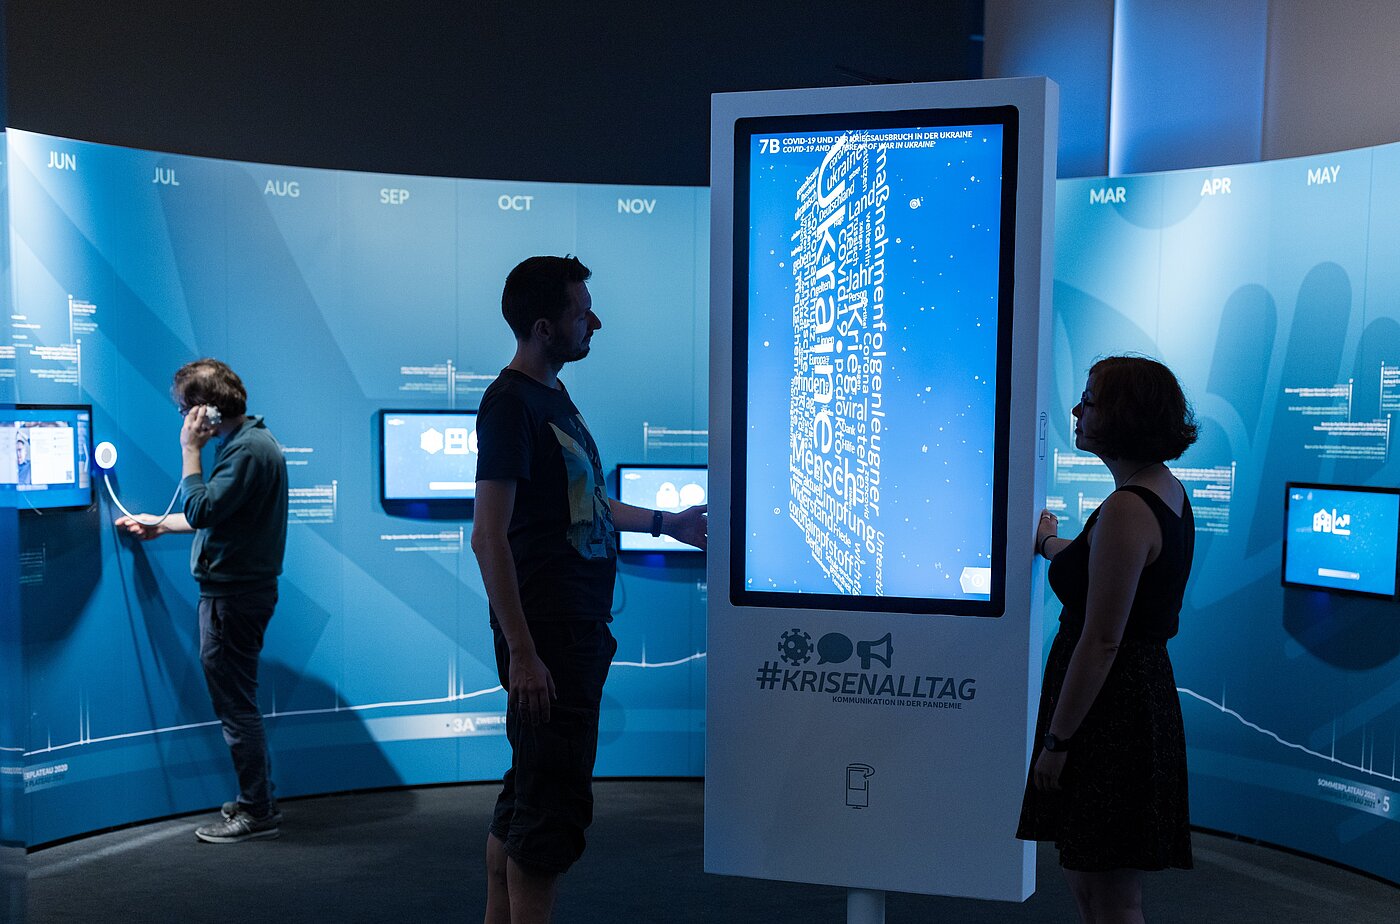 Das Bild zeigt Menschen in einer Ausstellung vor einem großen Bildschirm